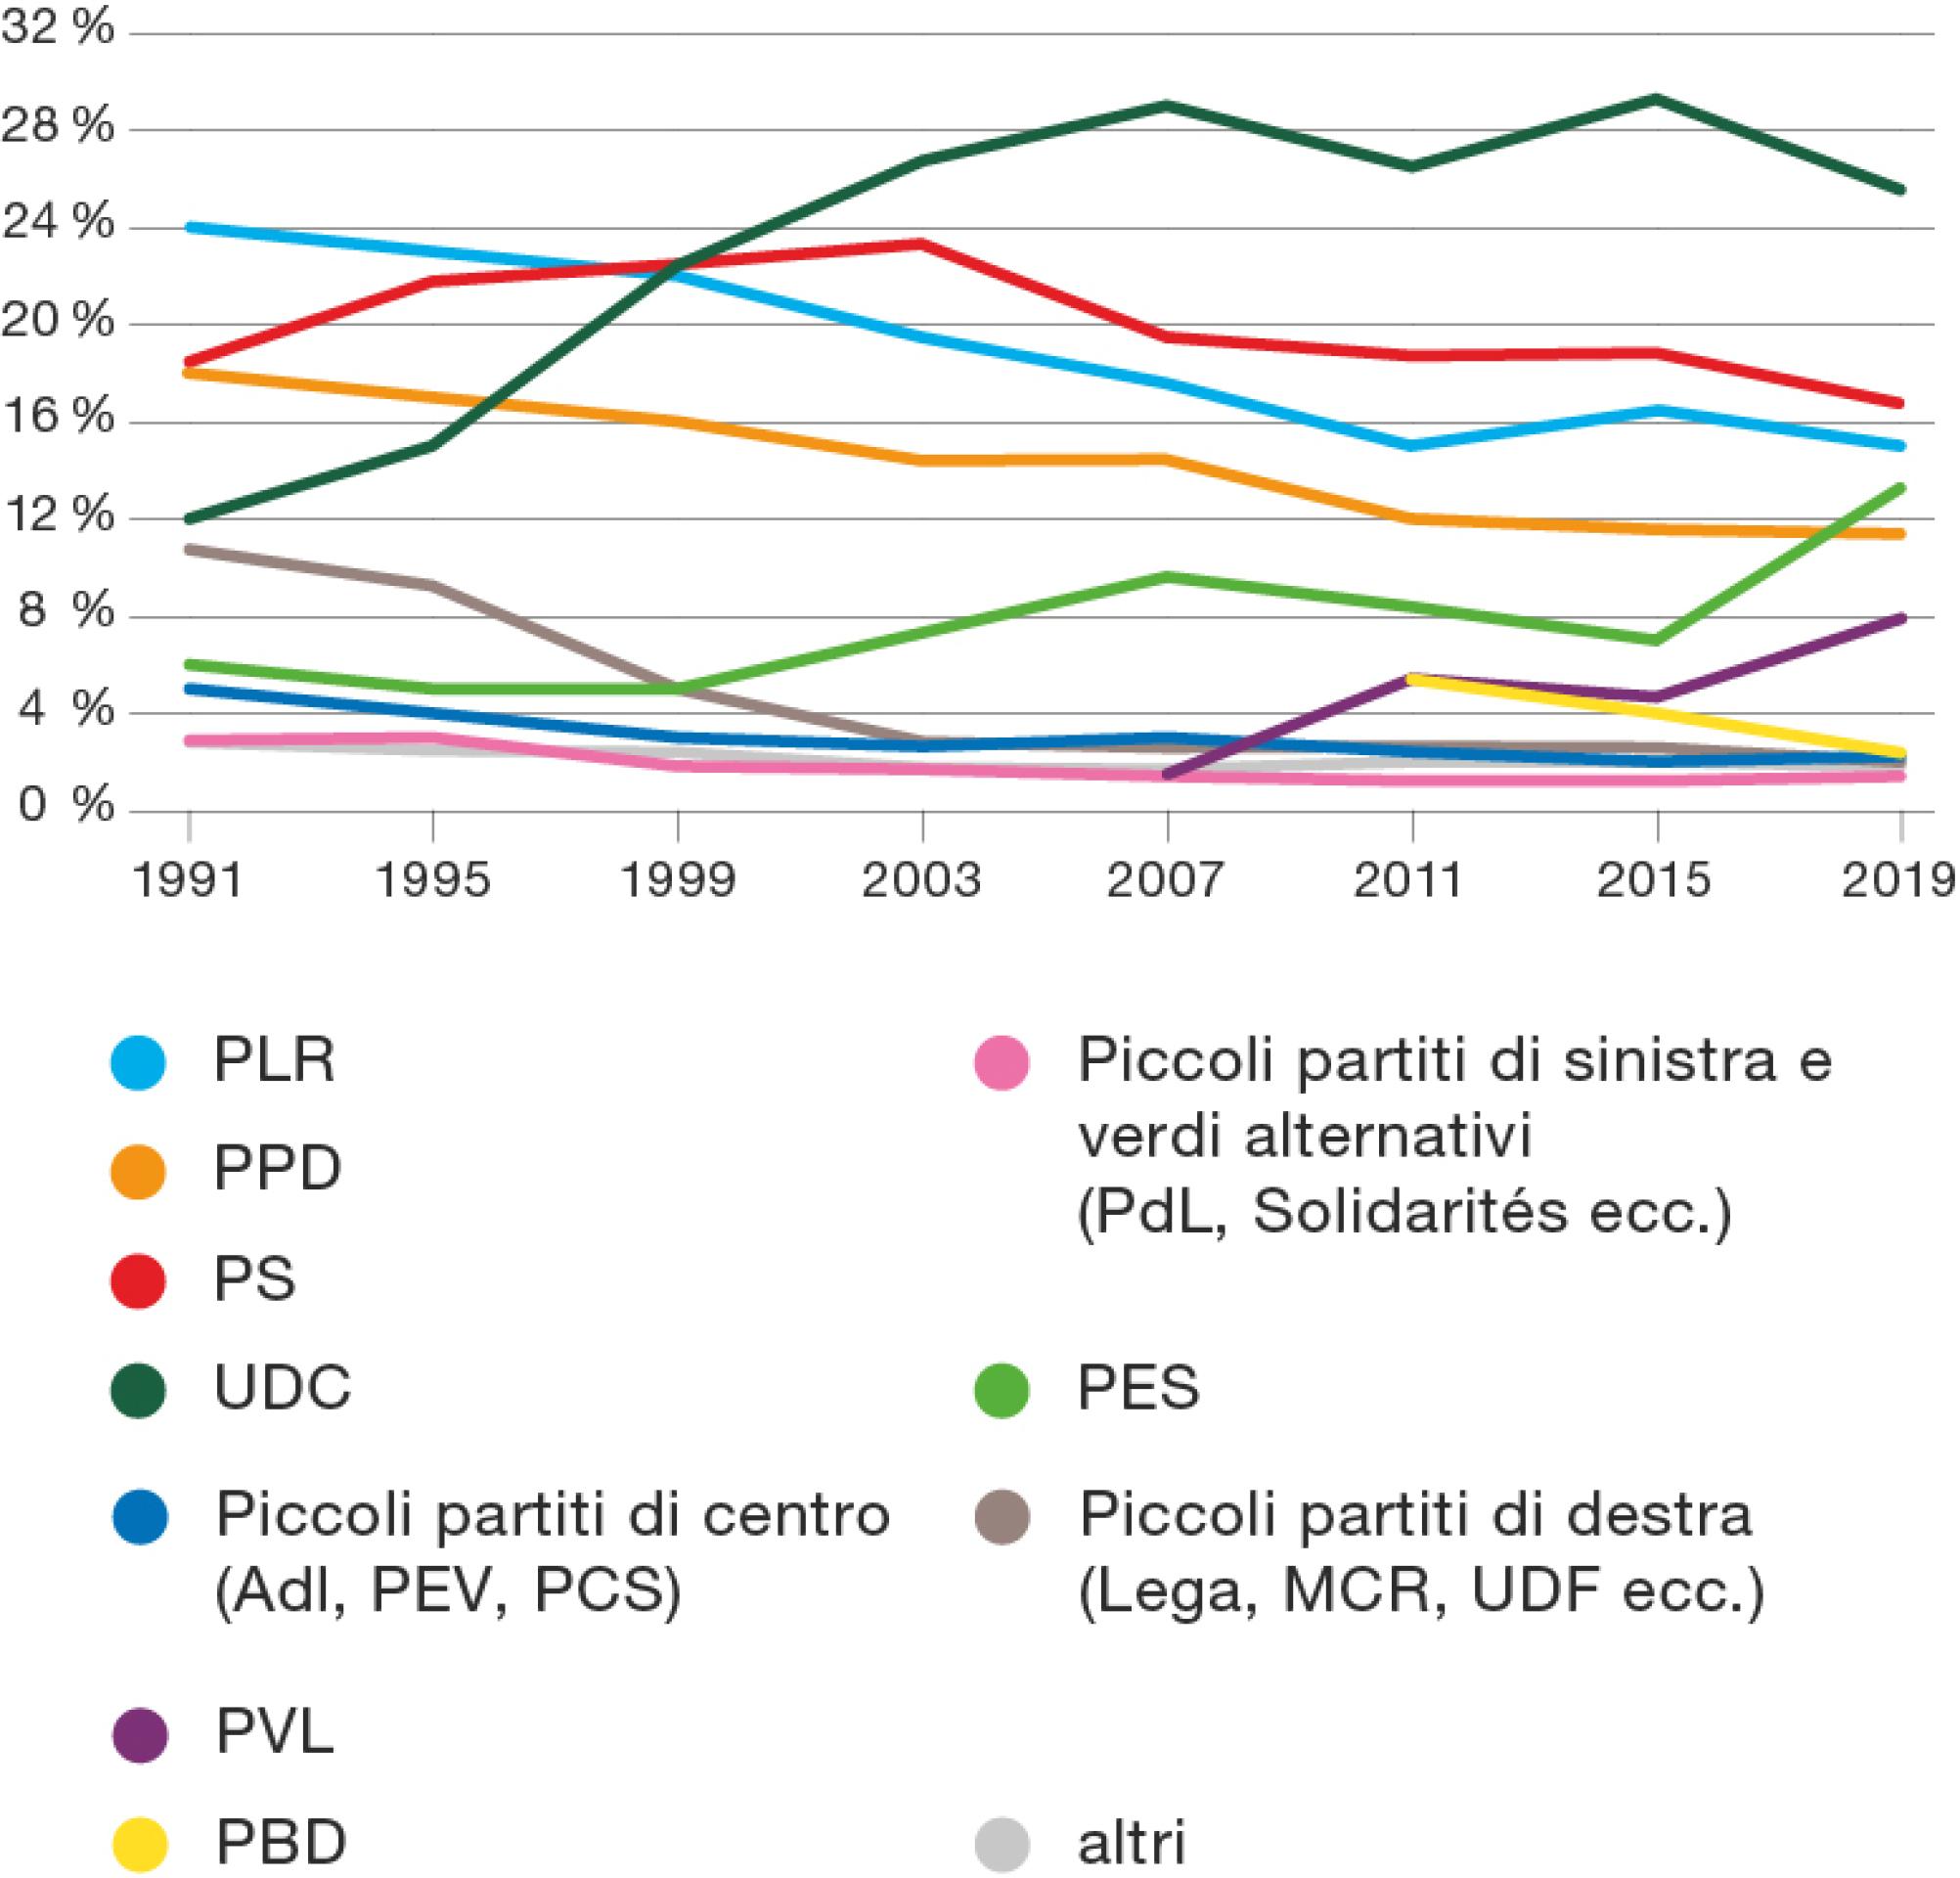 Percentuali di votanti per partito nelle elezioni del Consiglio nazionale e la loro evoluzione. Nel 1999 l’UDC è diventato il partito con il maggior numero di elettori. Anche i partiti ambientalisti hanno guadagnato quote di elettori. Gli altri partiti, invece, ne hanno perse.